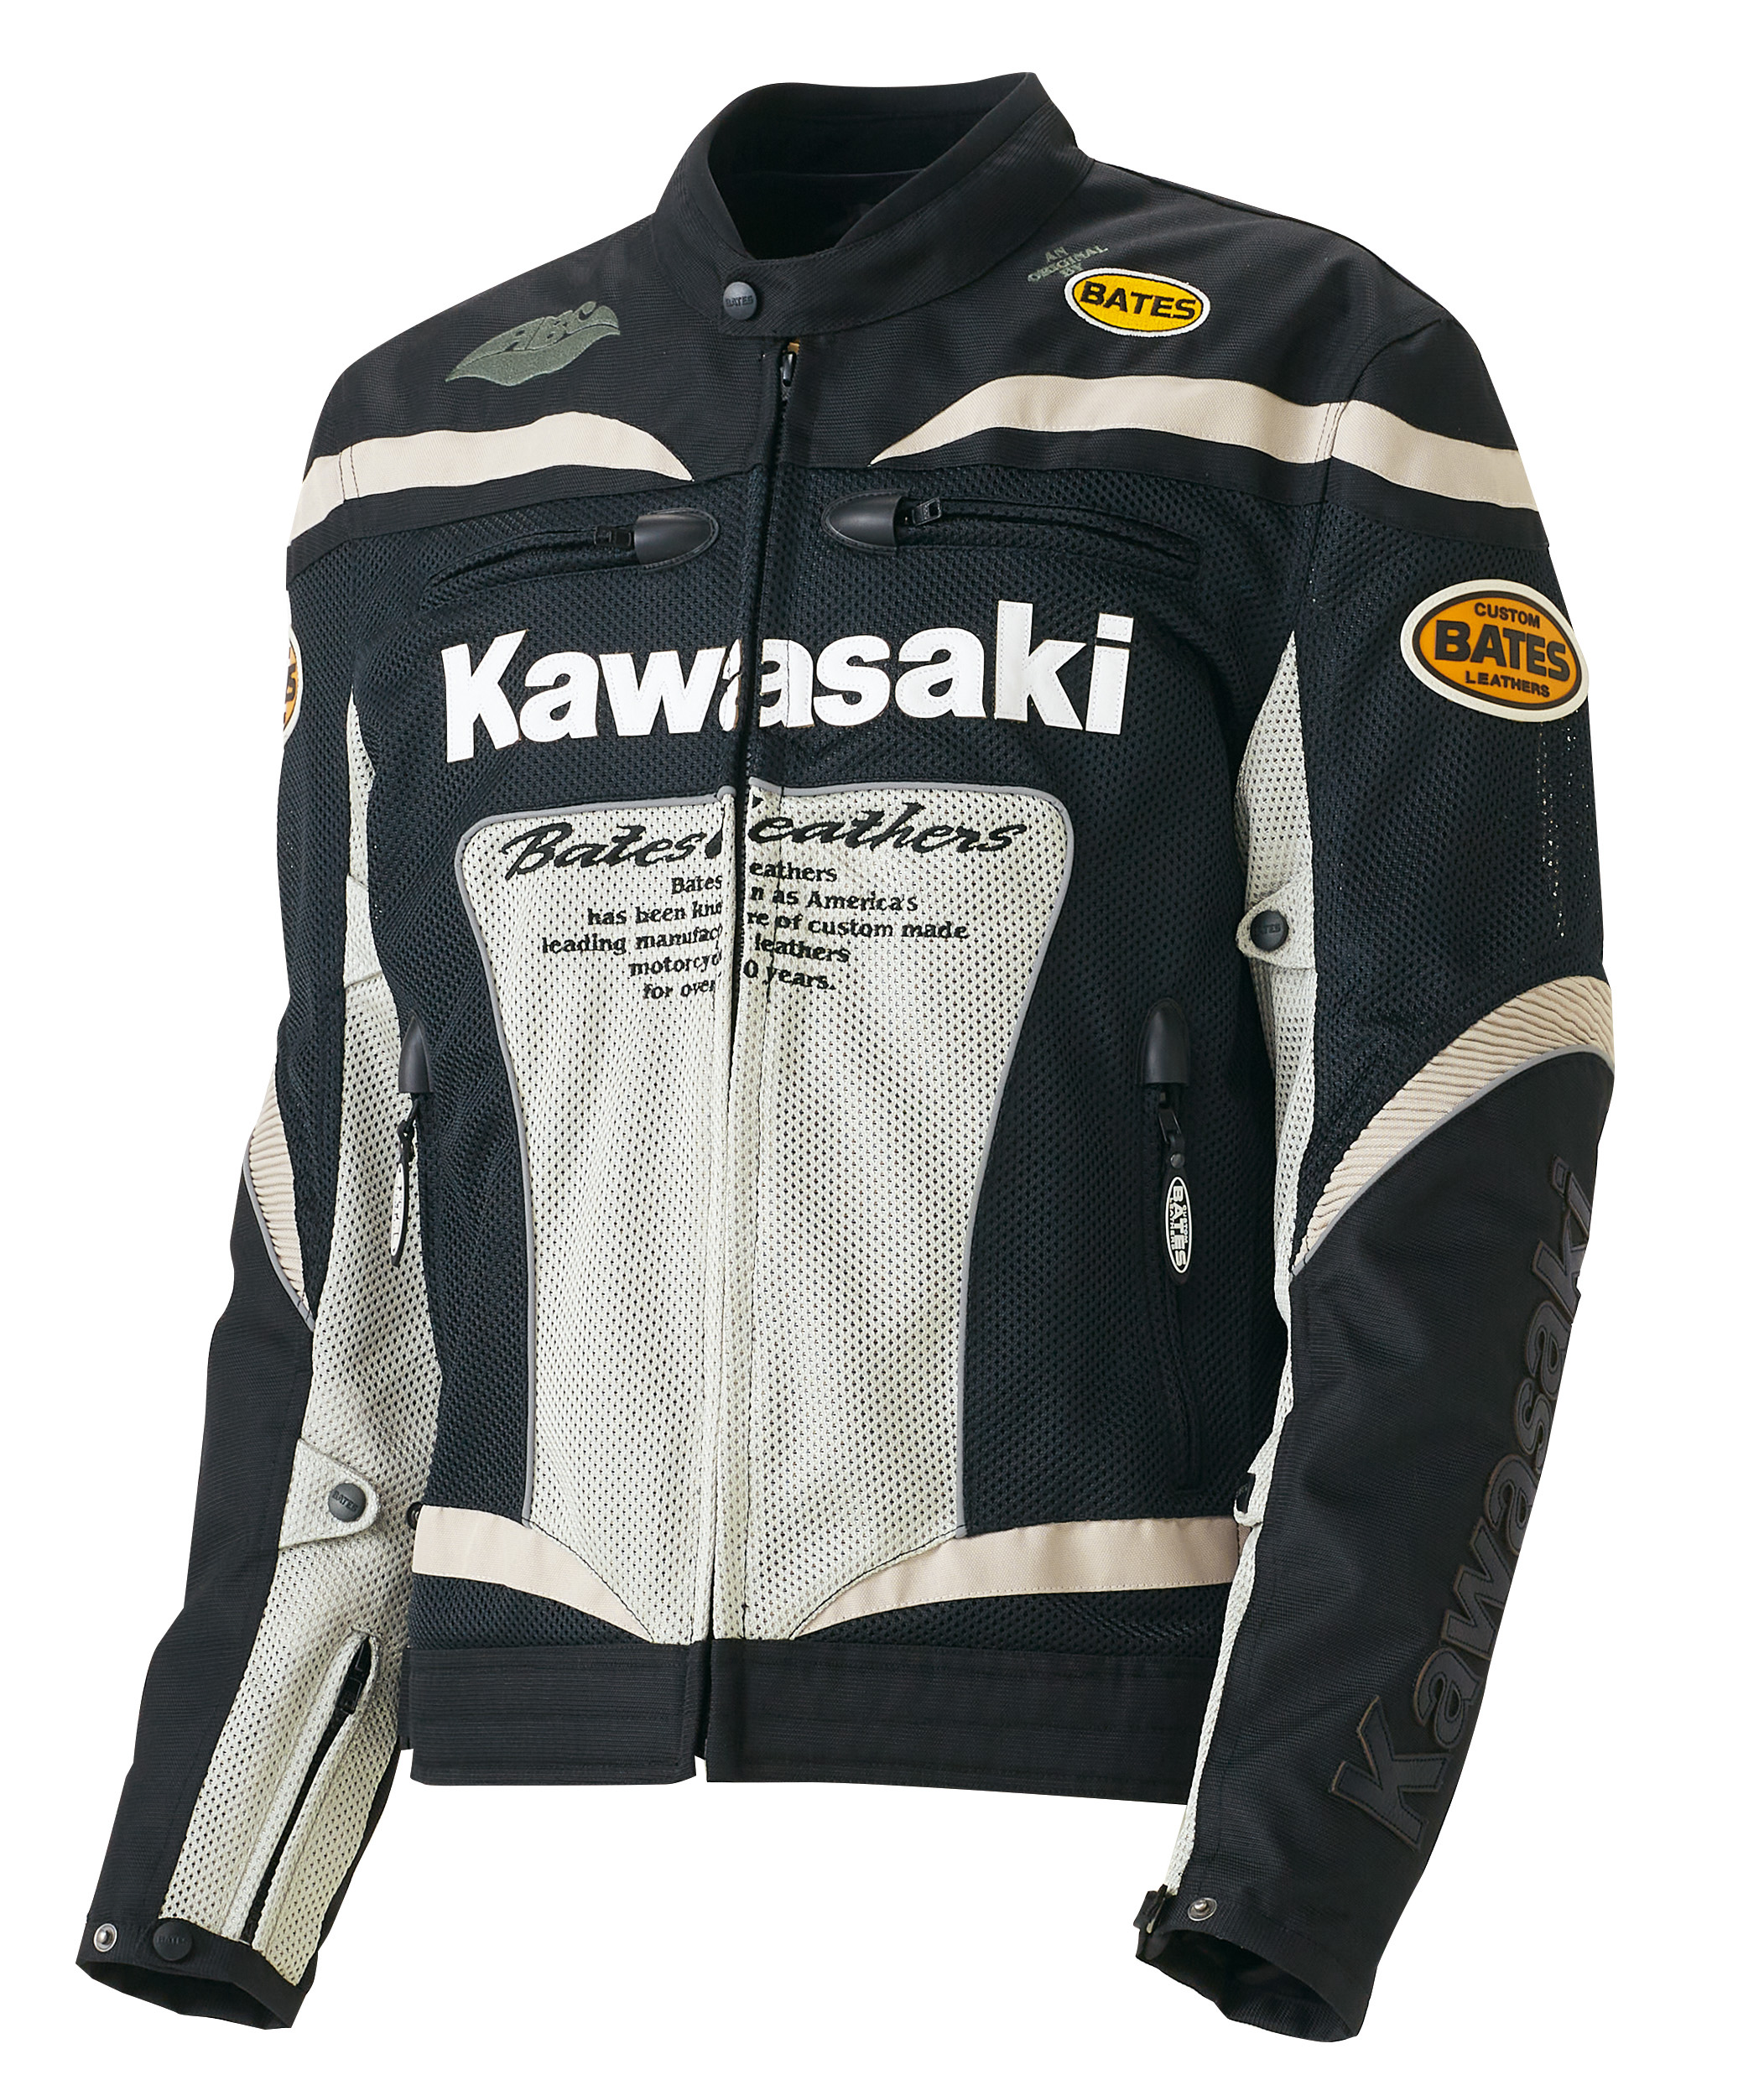 日本代理店正規品 BATES Kawasaki メッシュジャケット - 通販 - www 